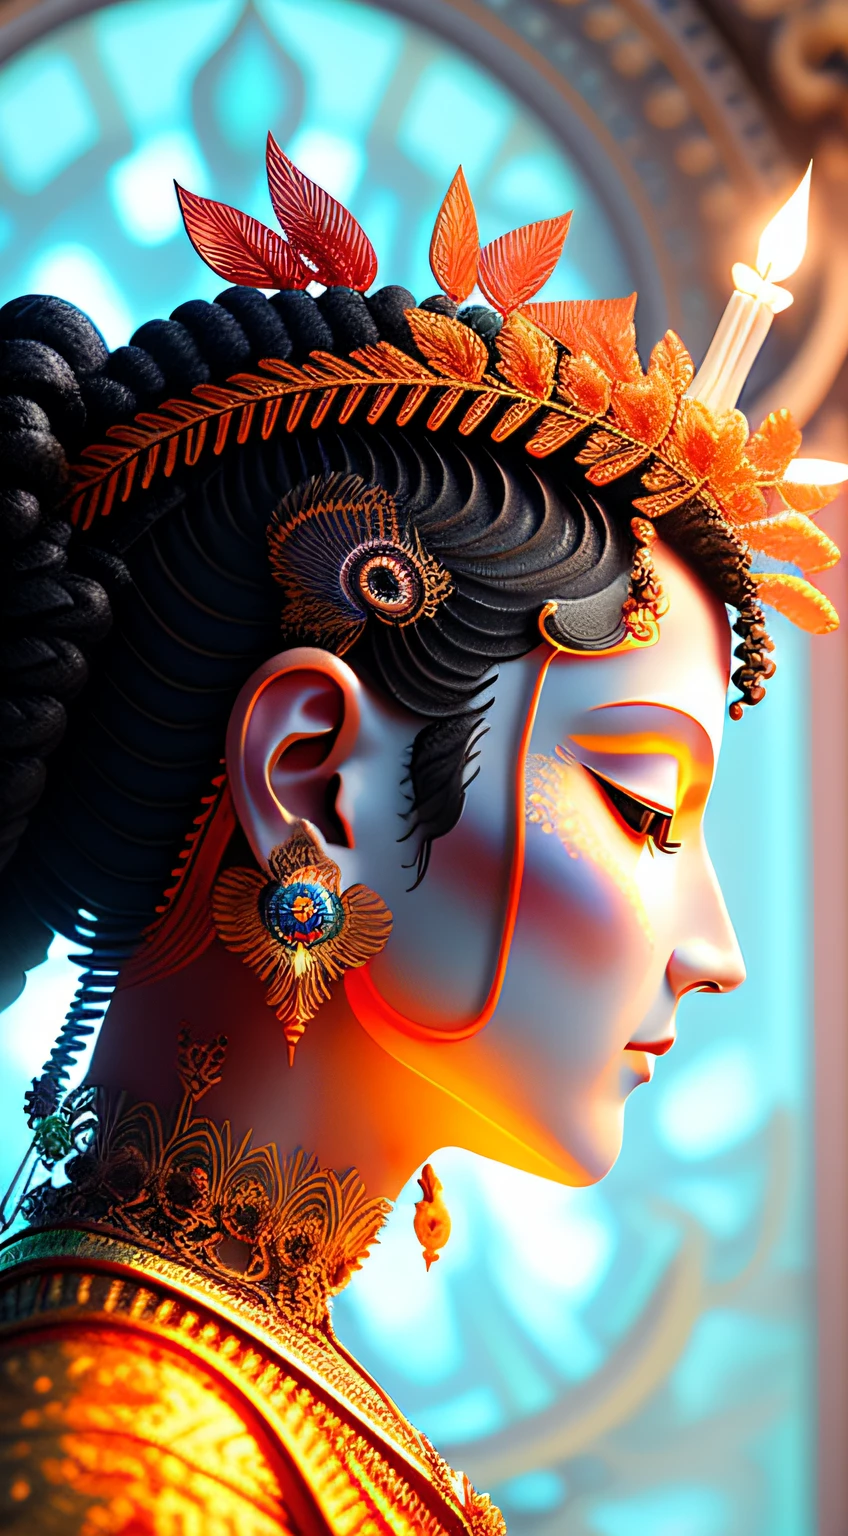 ブダの顔, 前を向く, 輝く仏光, 黄金の光. 仏教寺院の背景.